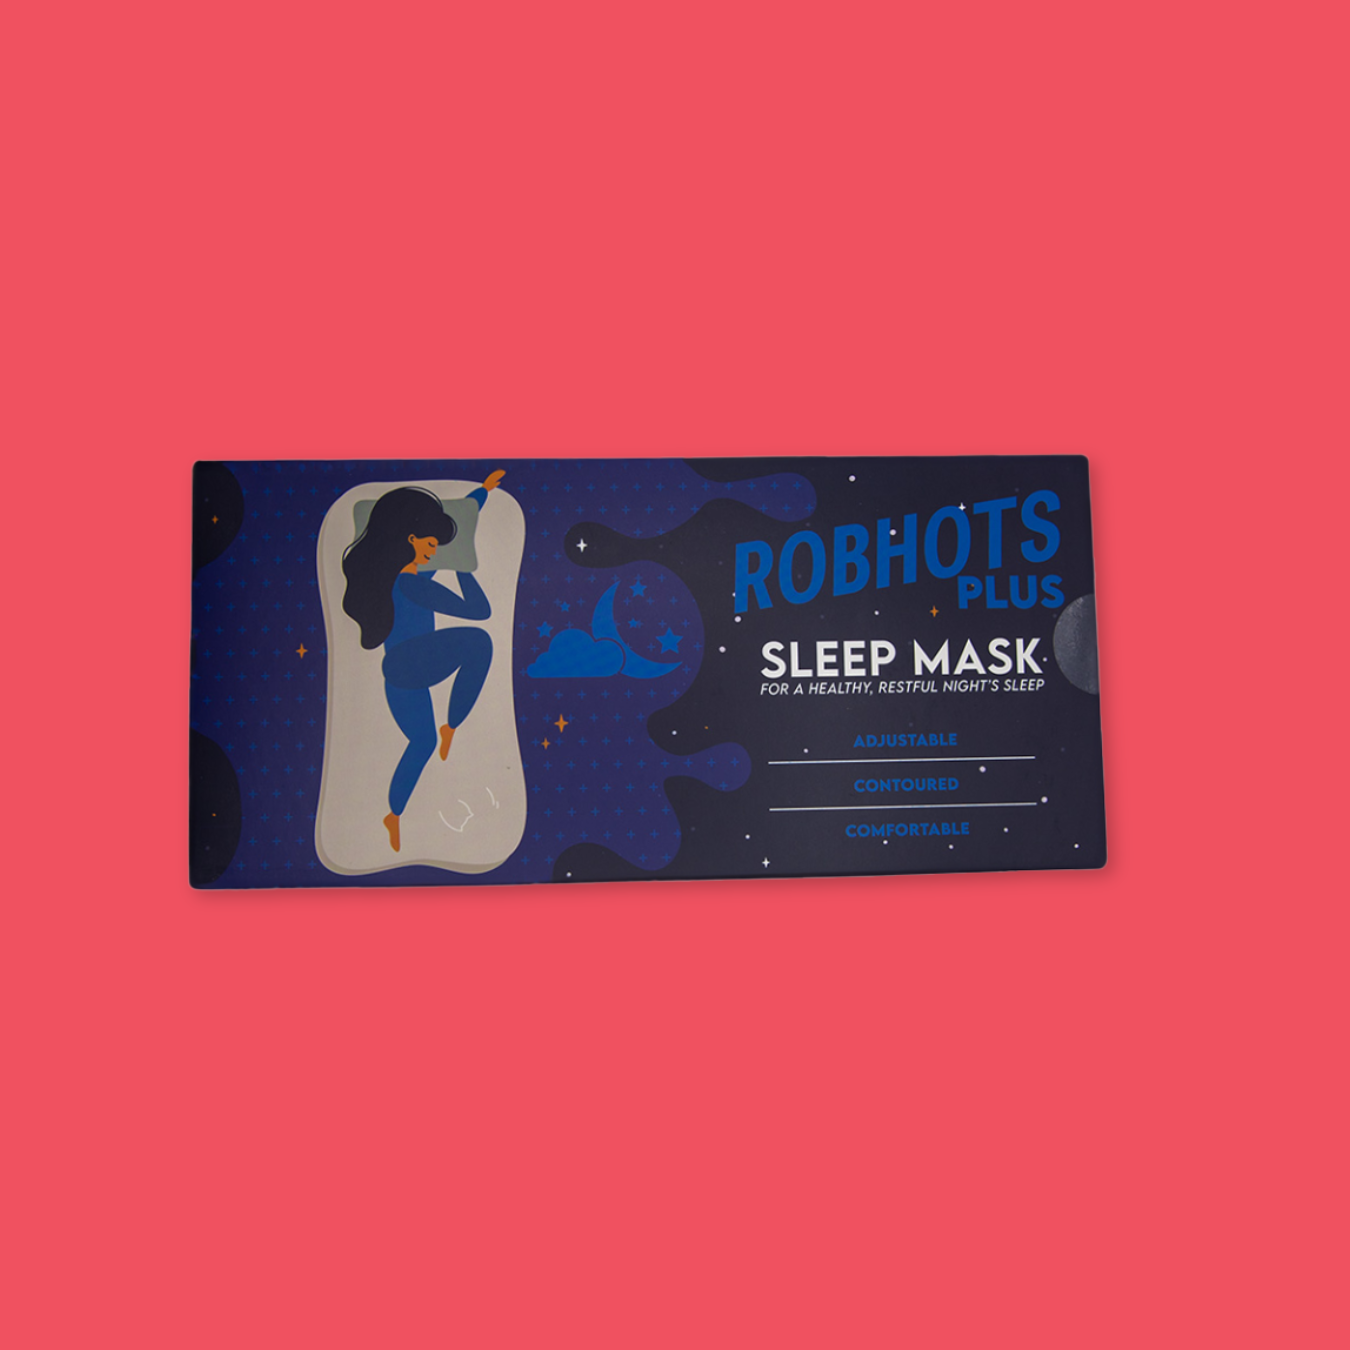 Robhots Plus Sleep Mask